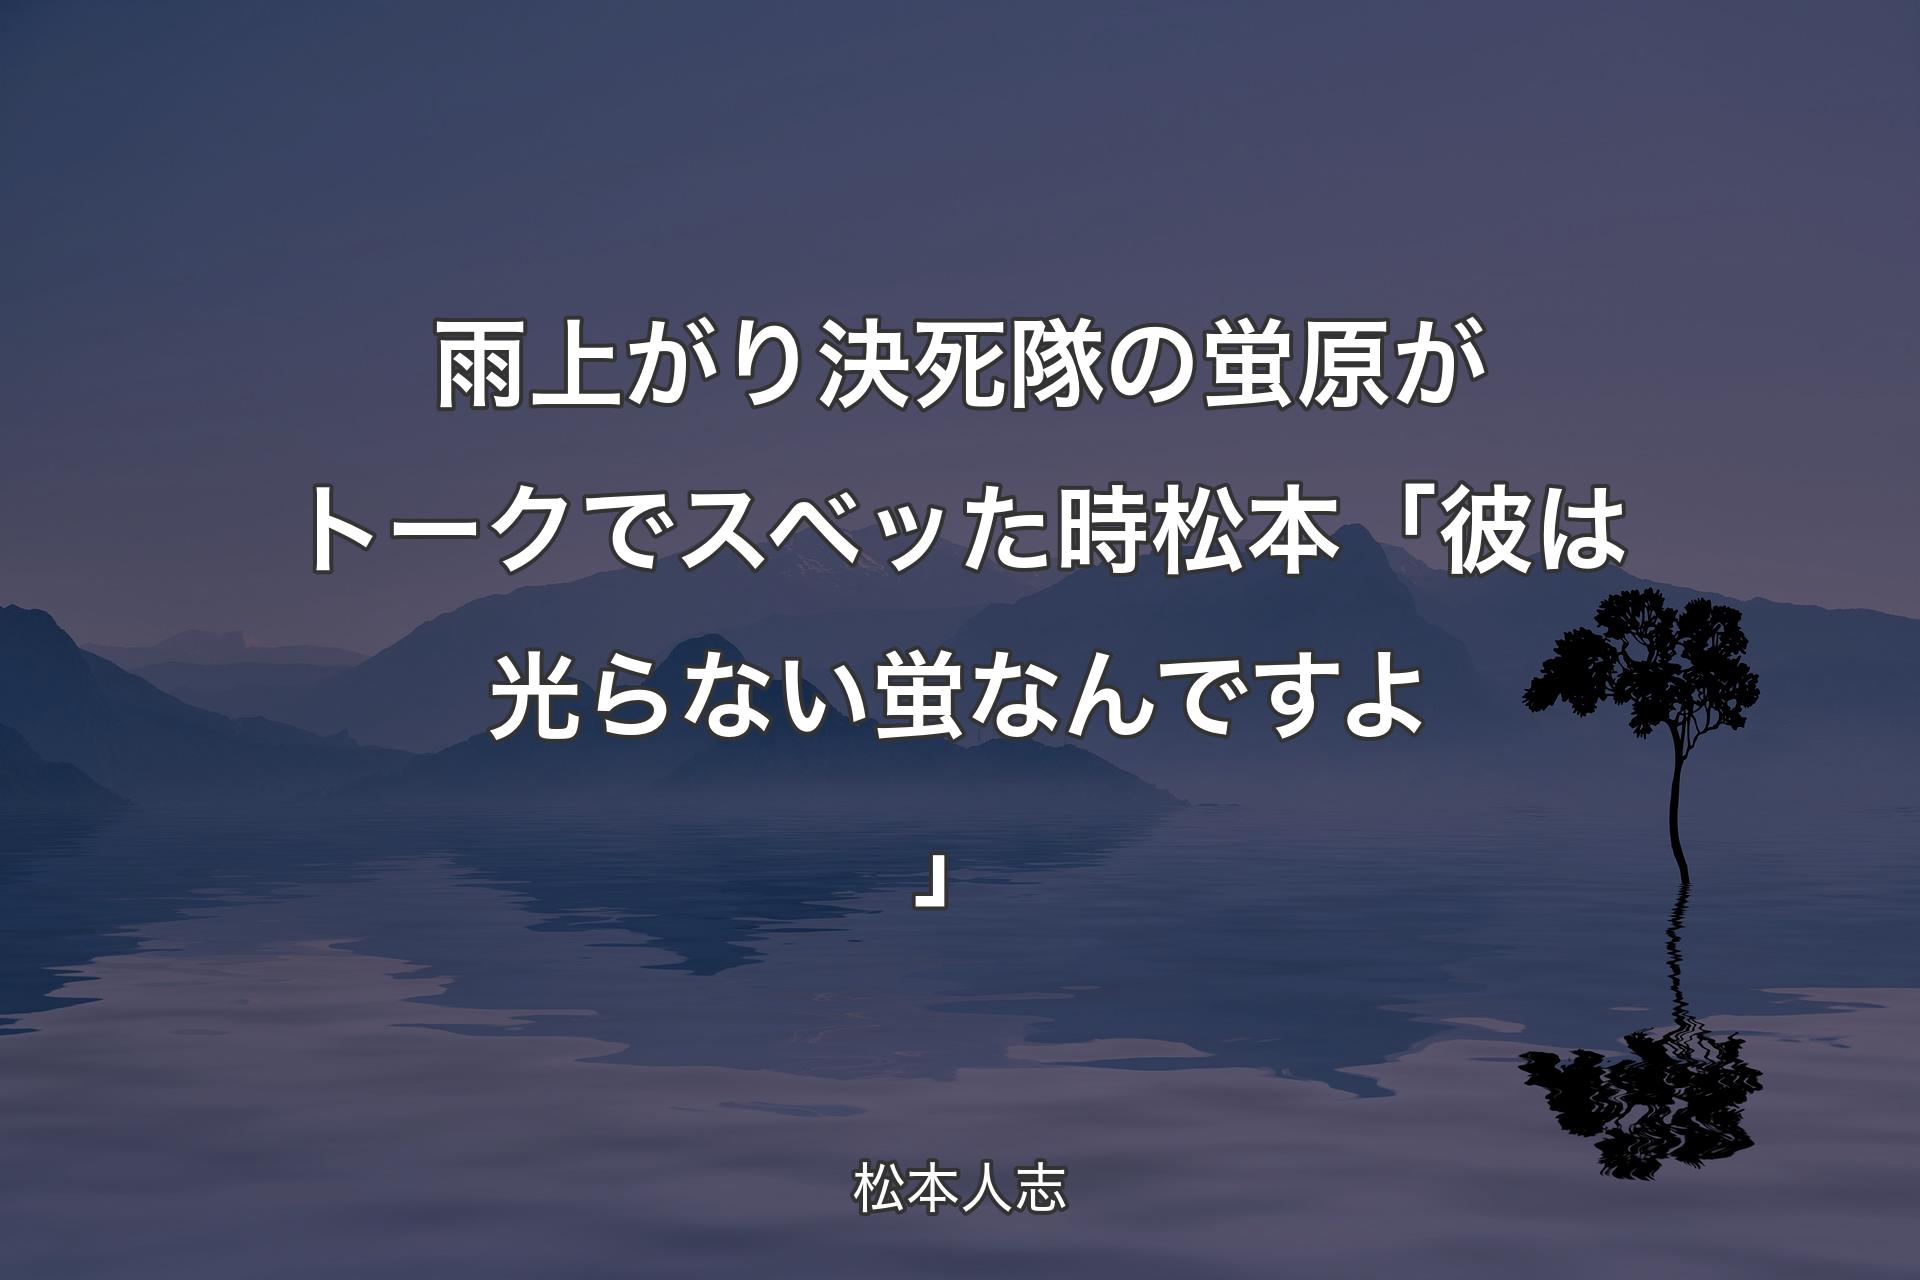 【背景4】雨上がり決死隊の蛍原がトークでスベッた時 松本「彼は光らない蛍なんですよ」 - 松本人志